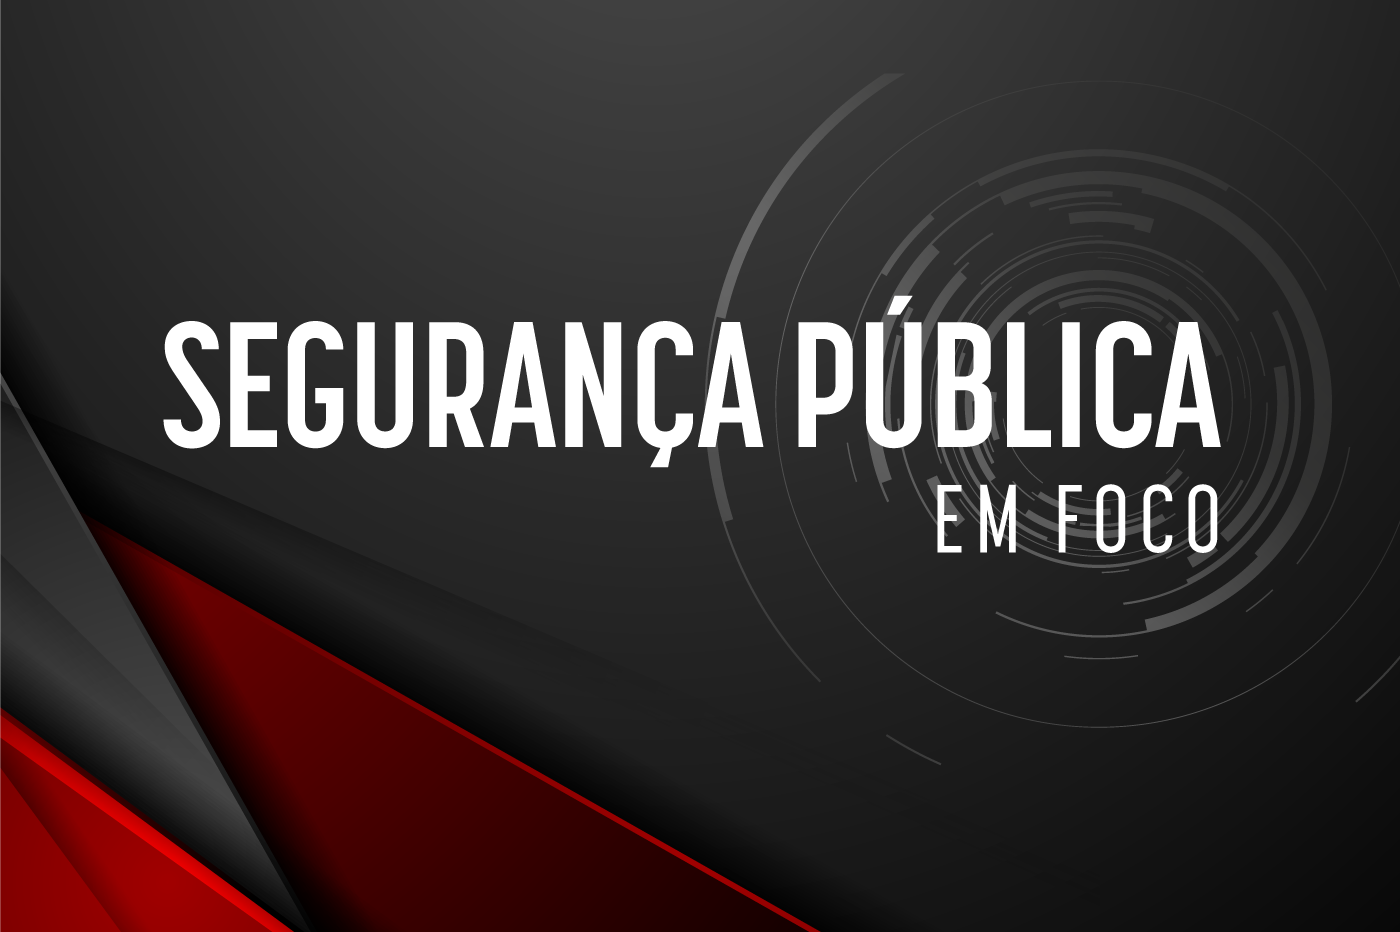 seguranca_publica_em_foco_banner.png - 200,15 kB